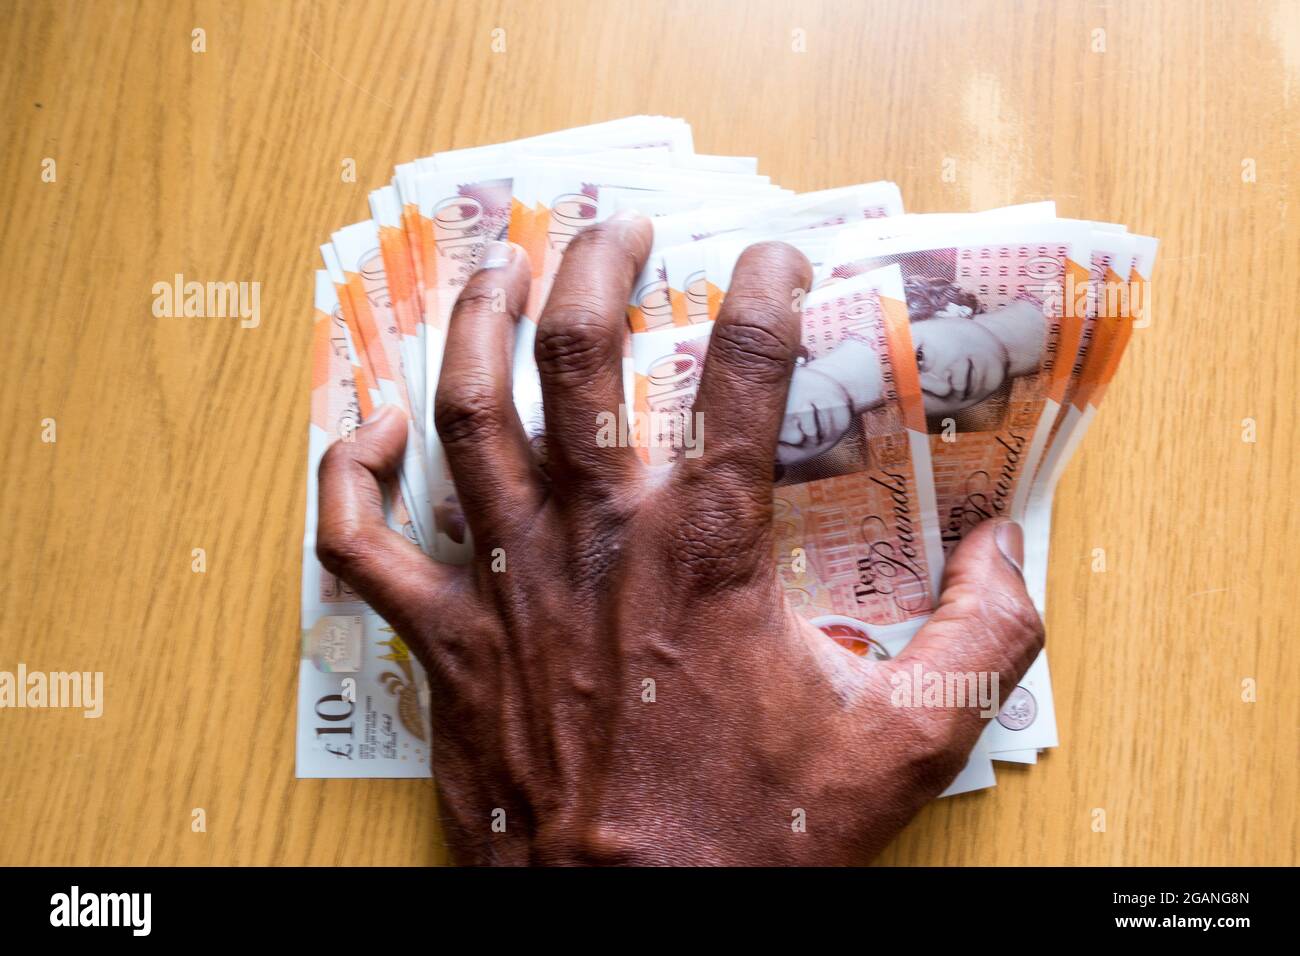 Homme d'âge moyen indien asiatique écrasant des notes de currenty anglais avec la main Banque D'Images